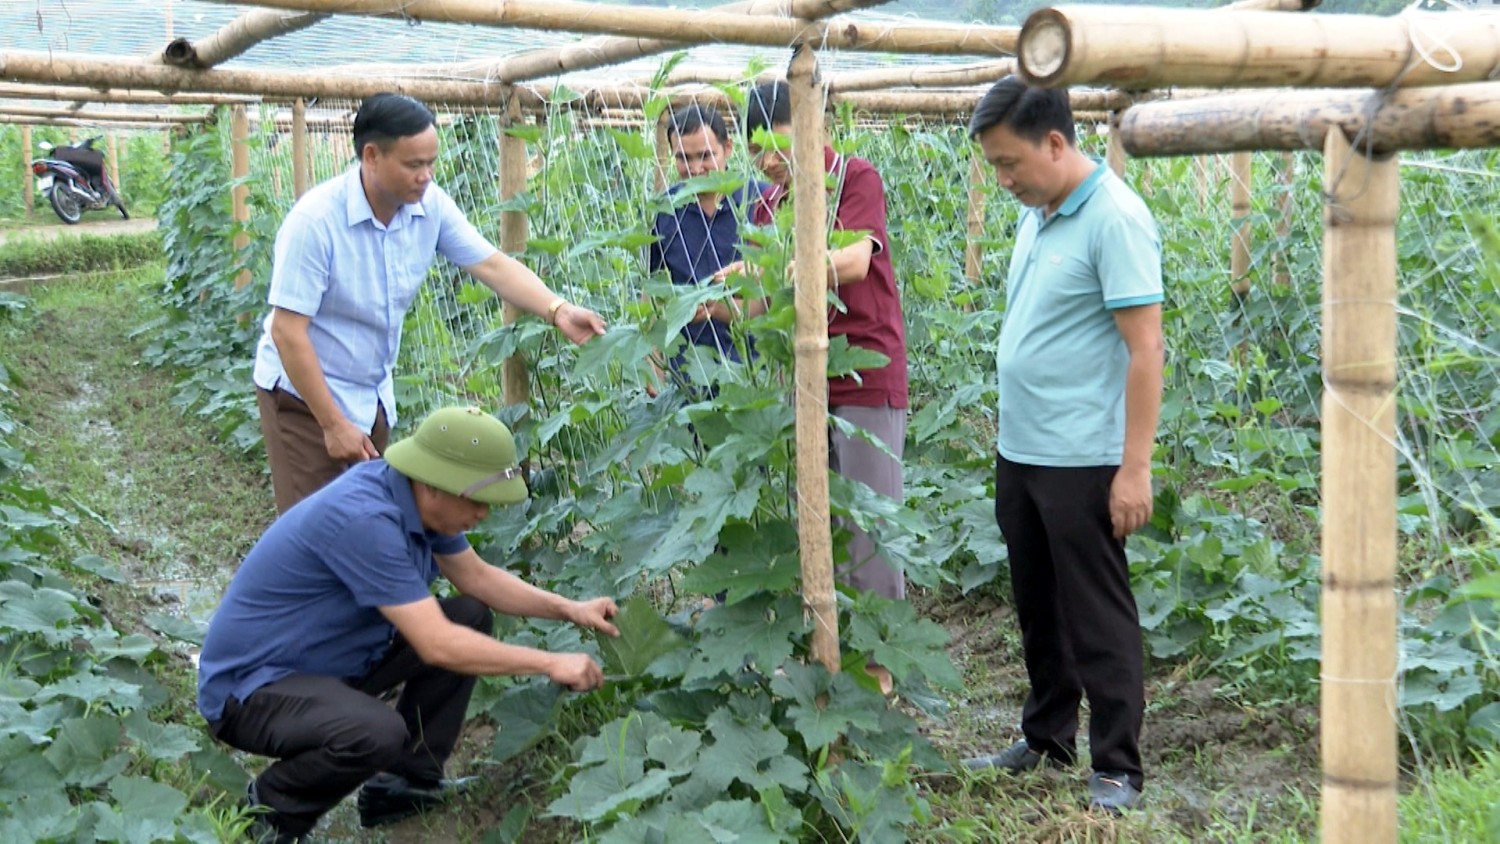 Lãnh đạo huyện Than UYên cùng xã Mường Kim hướng dẫn cách chăm sóc bí xanh